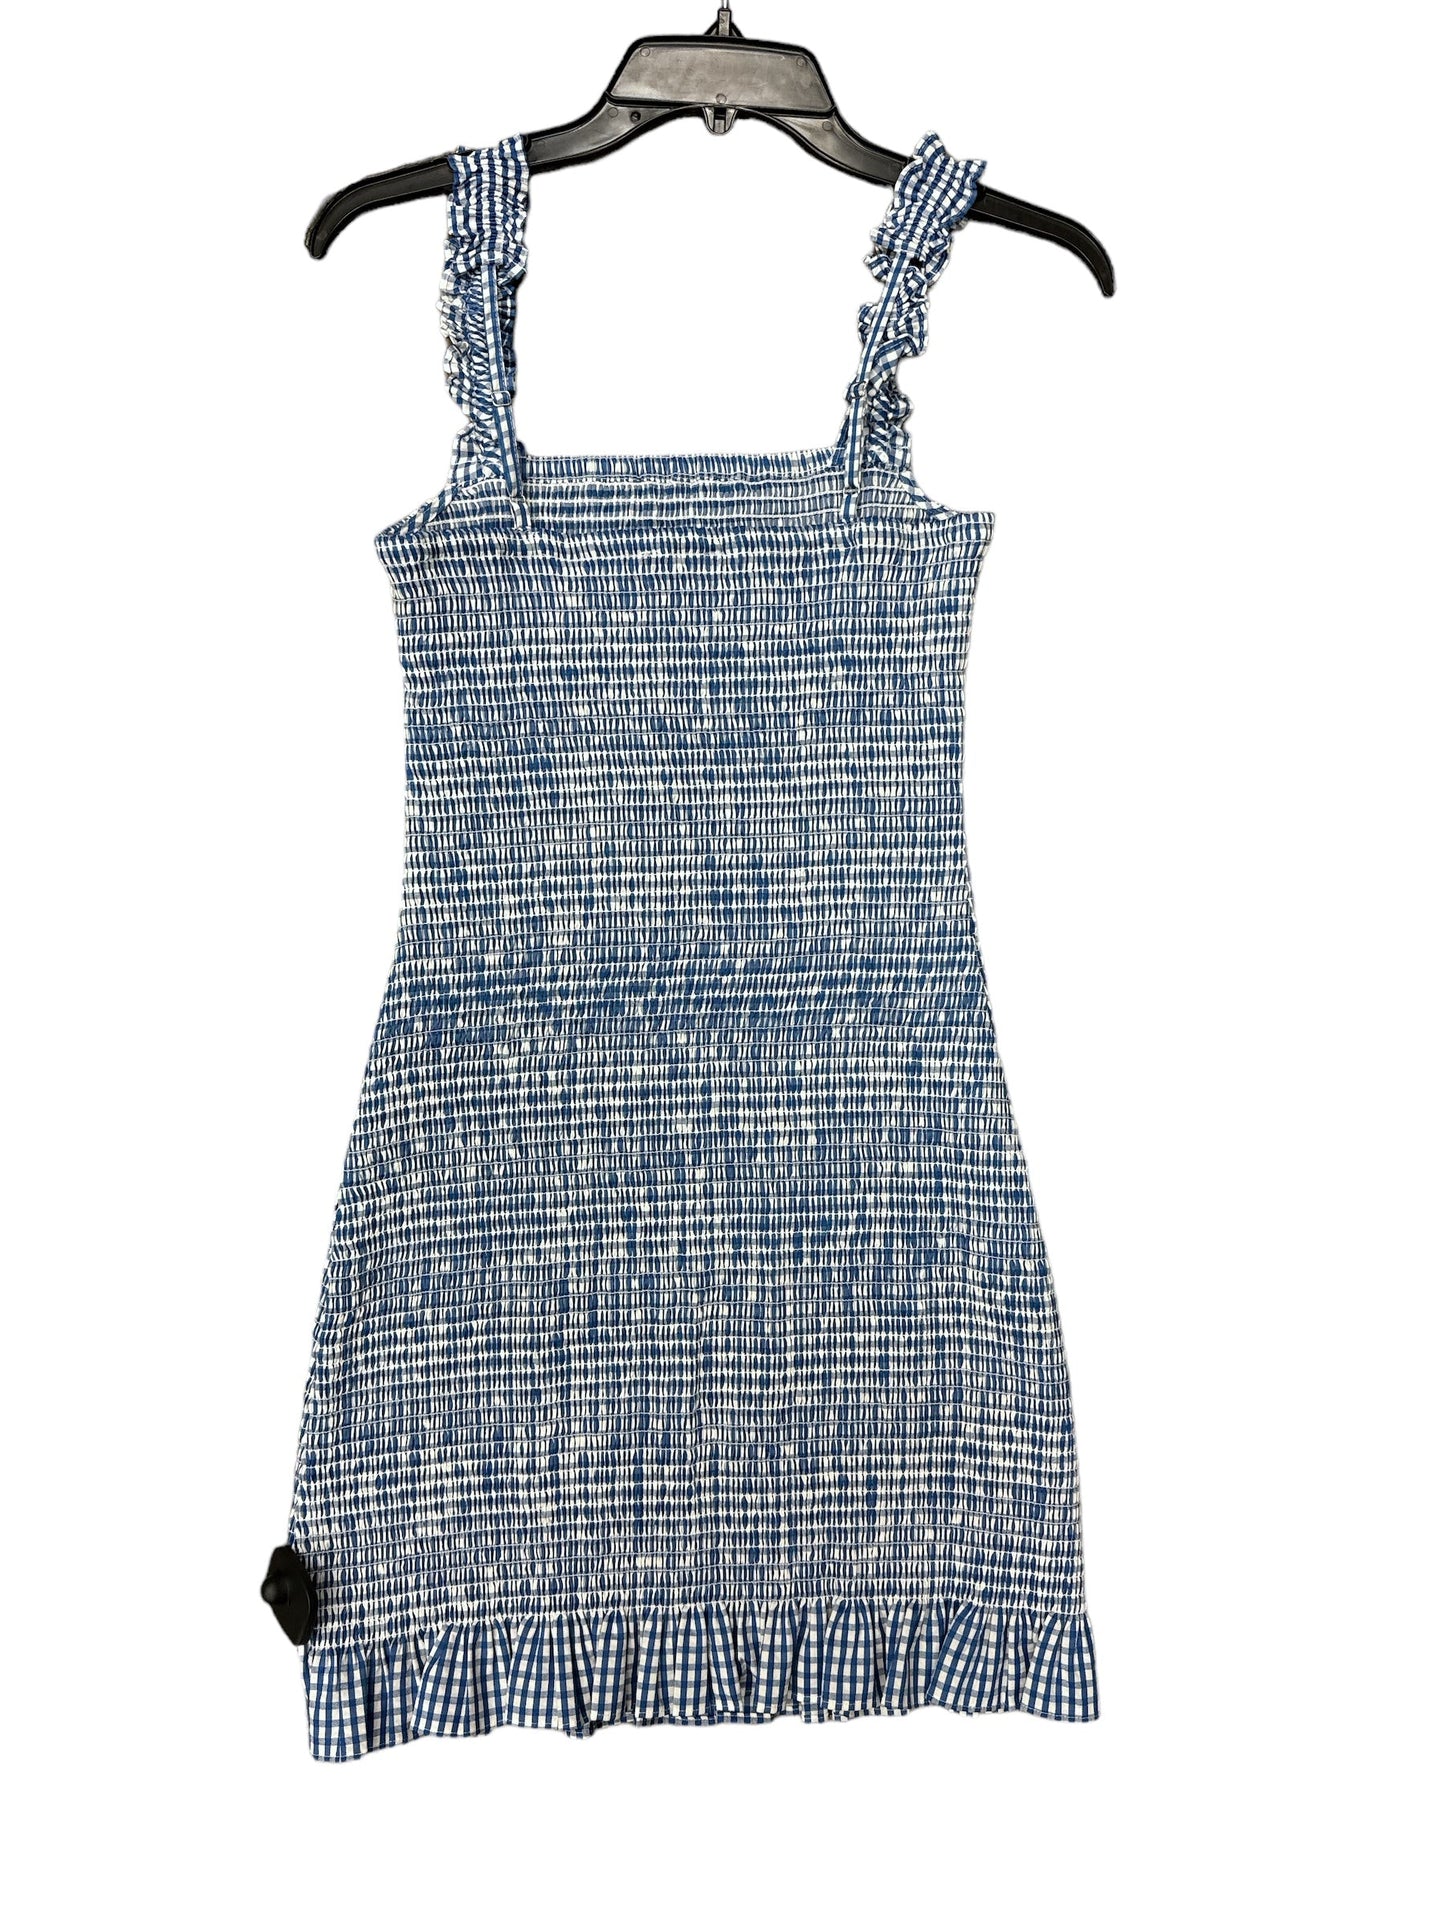 Dress Casual Midi By Gianni Bini  Size: 6